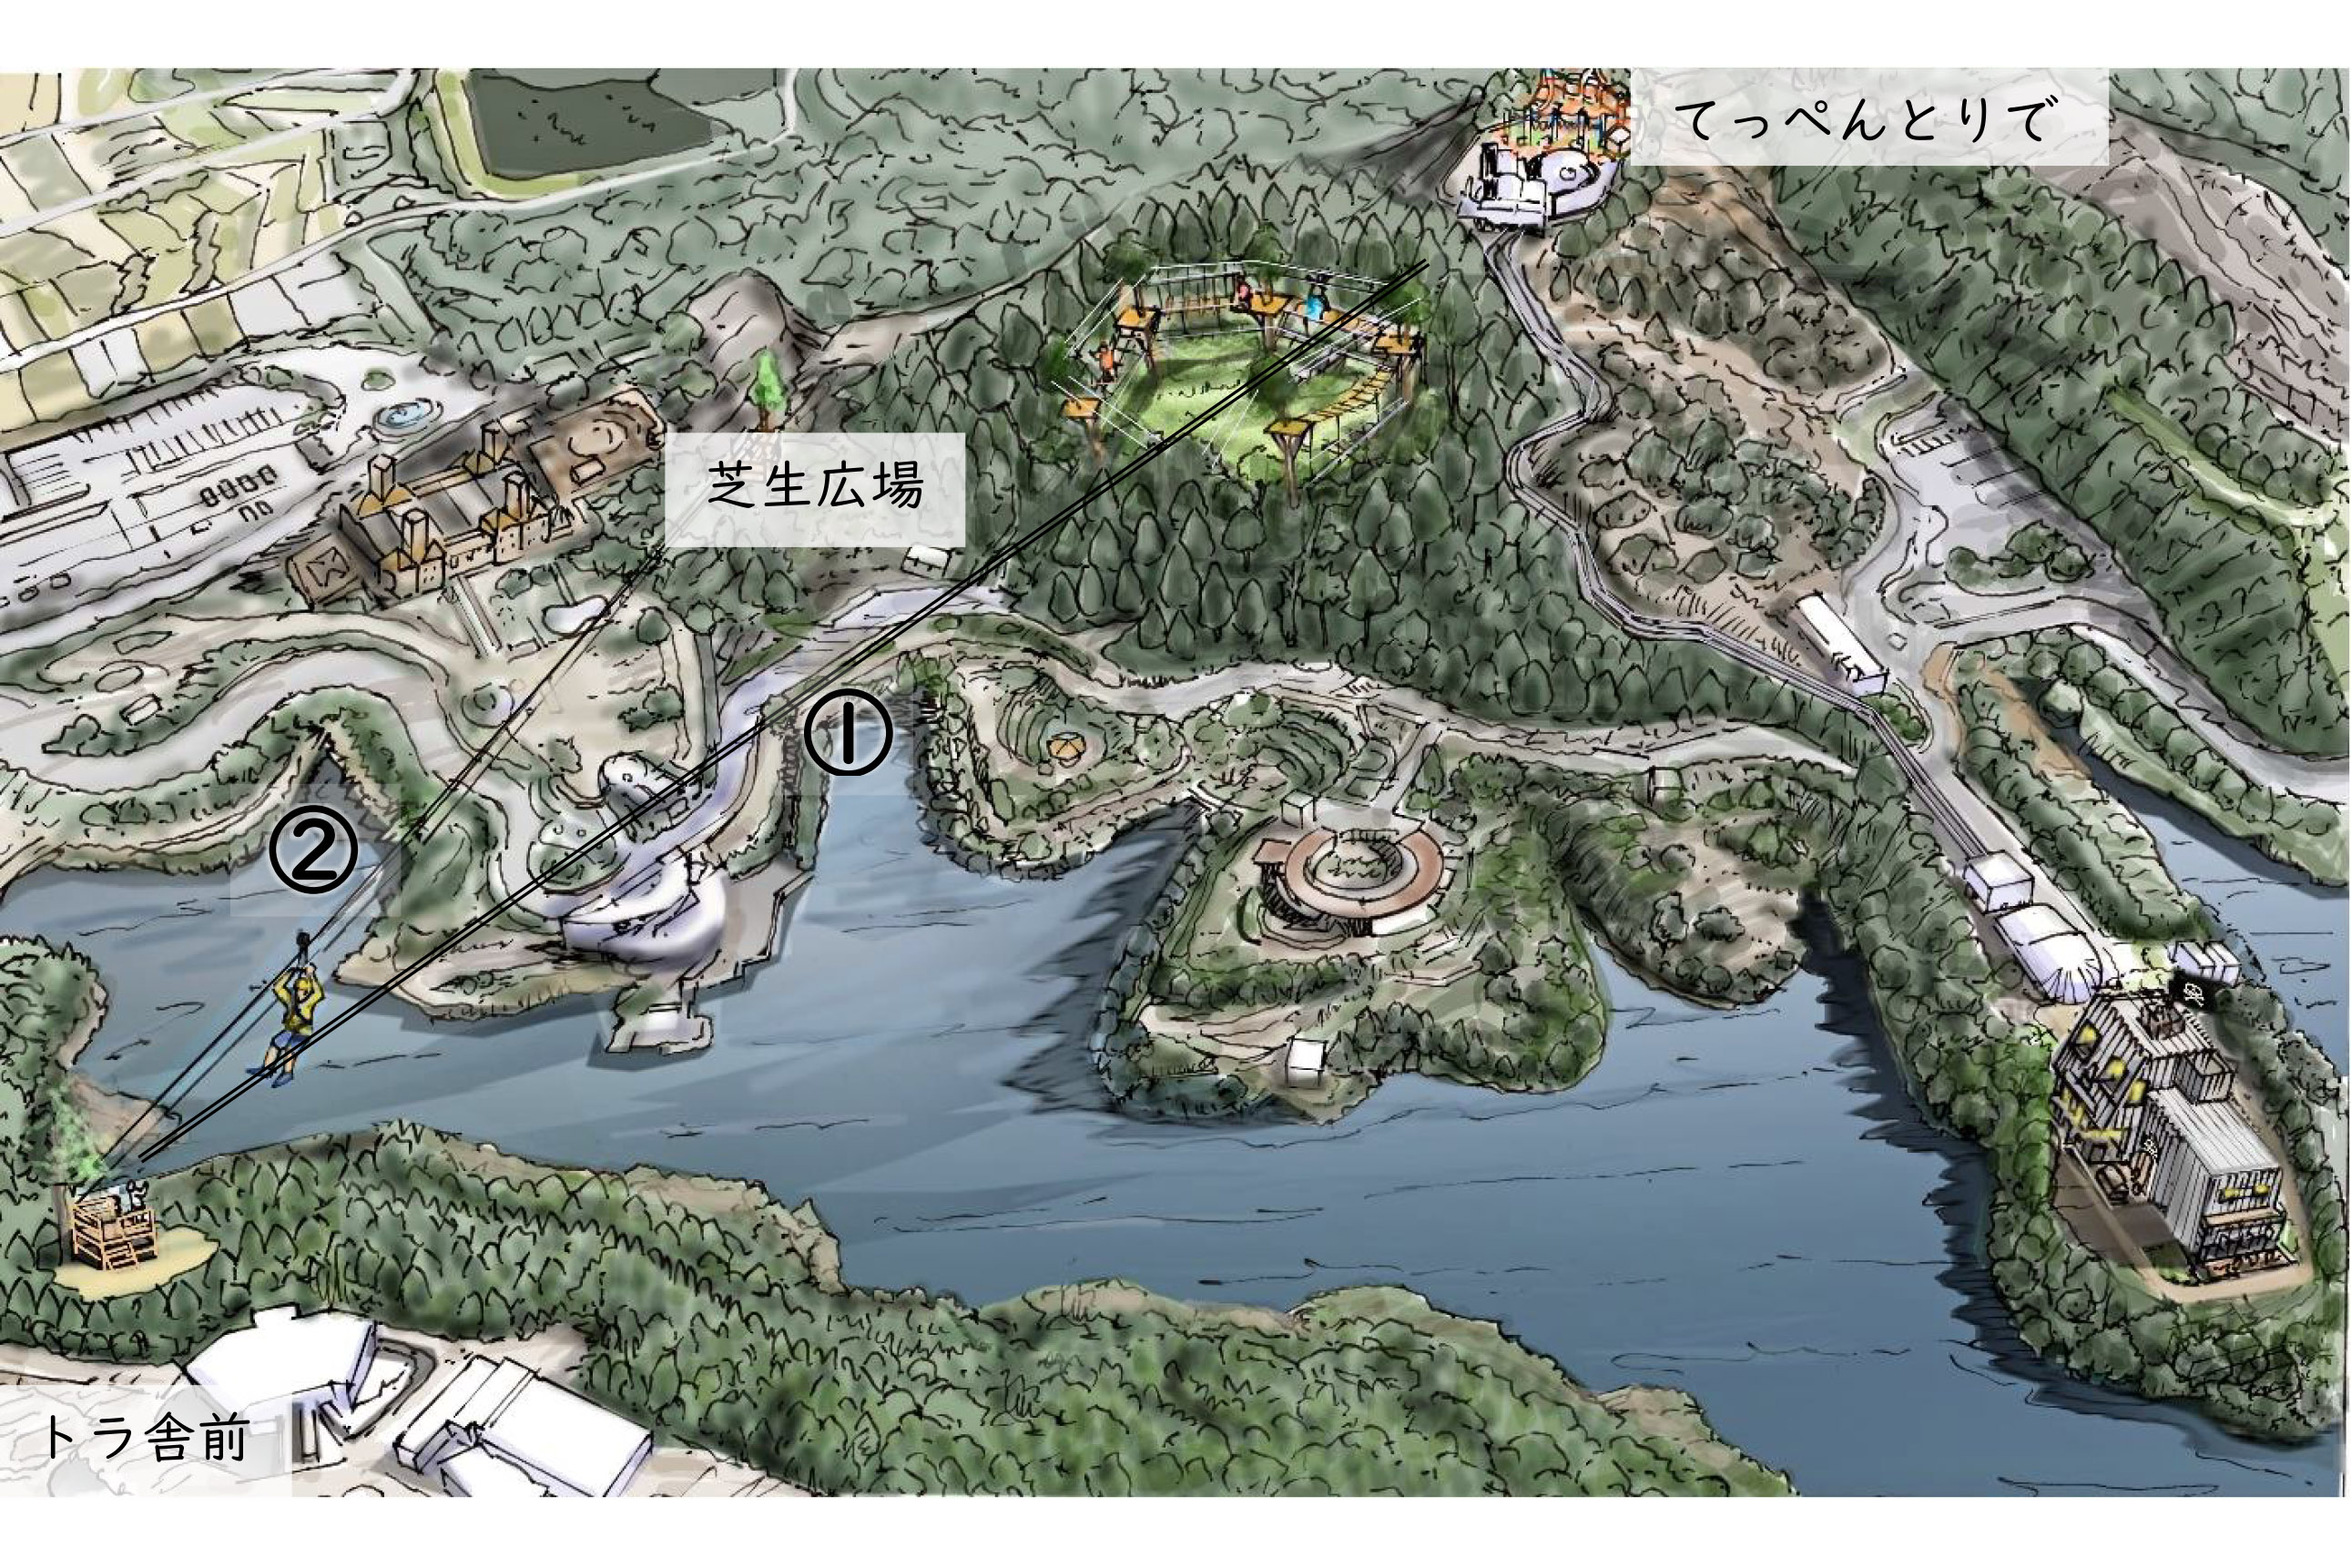 愛媛県 えひめこどもの城 とべ動物園 を結ぶ四国最大級のジップライン整備 21年3月オープン トラベル Watch